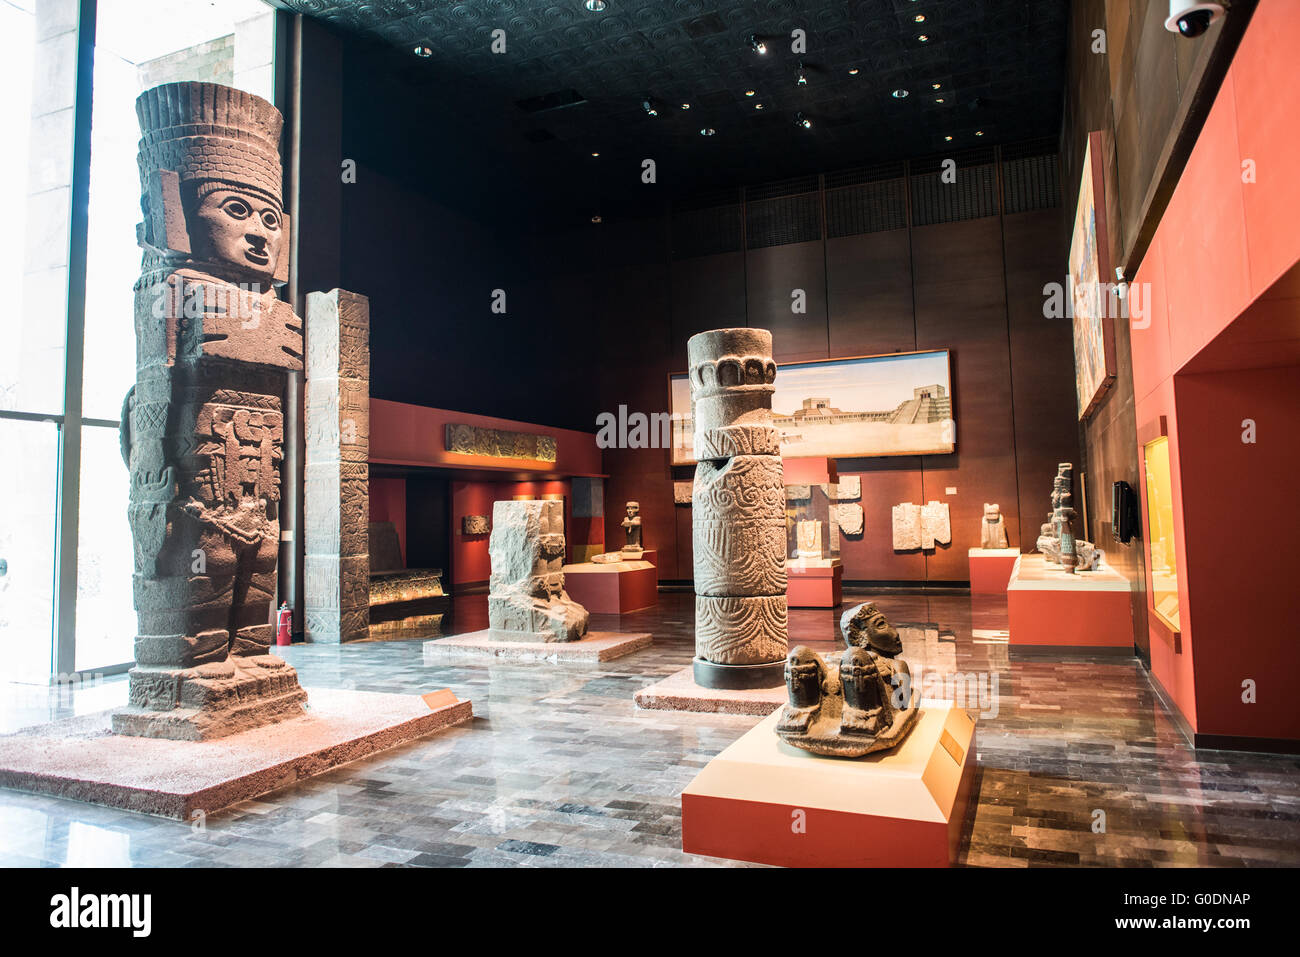 La VILLE DE MEXICO, MEXIQUE -- Le Musée National d'anthropologie en vedette d'importants artefacts archéologiques et anthropologiques de l'époque pré-colombienne du Mexique, y compris son patrimoine et cultures aztèque indiginous. Banque D'Images